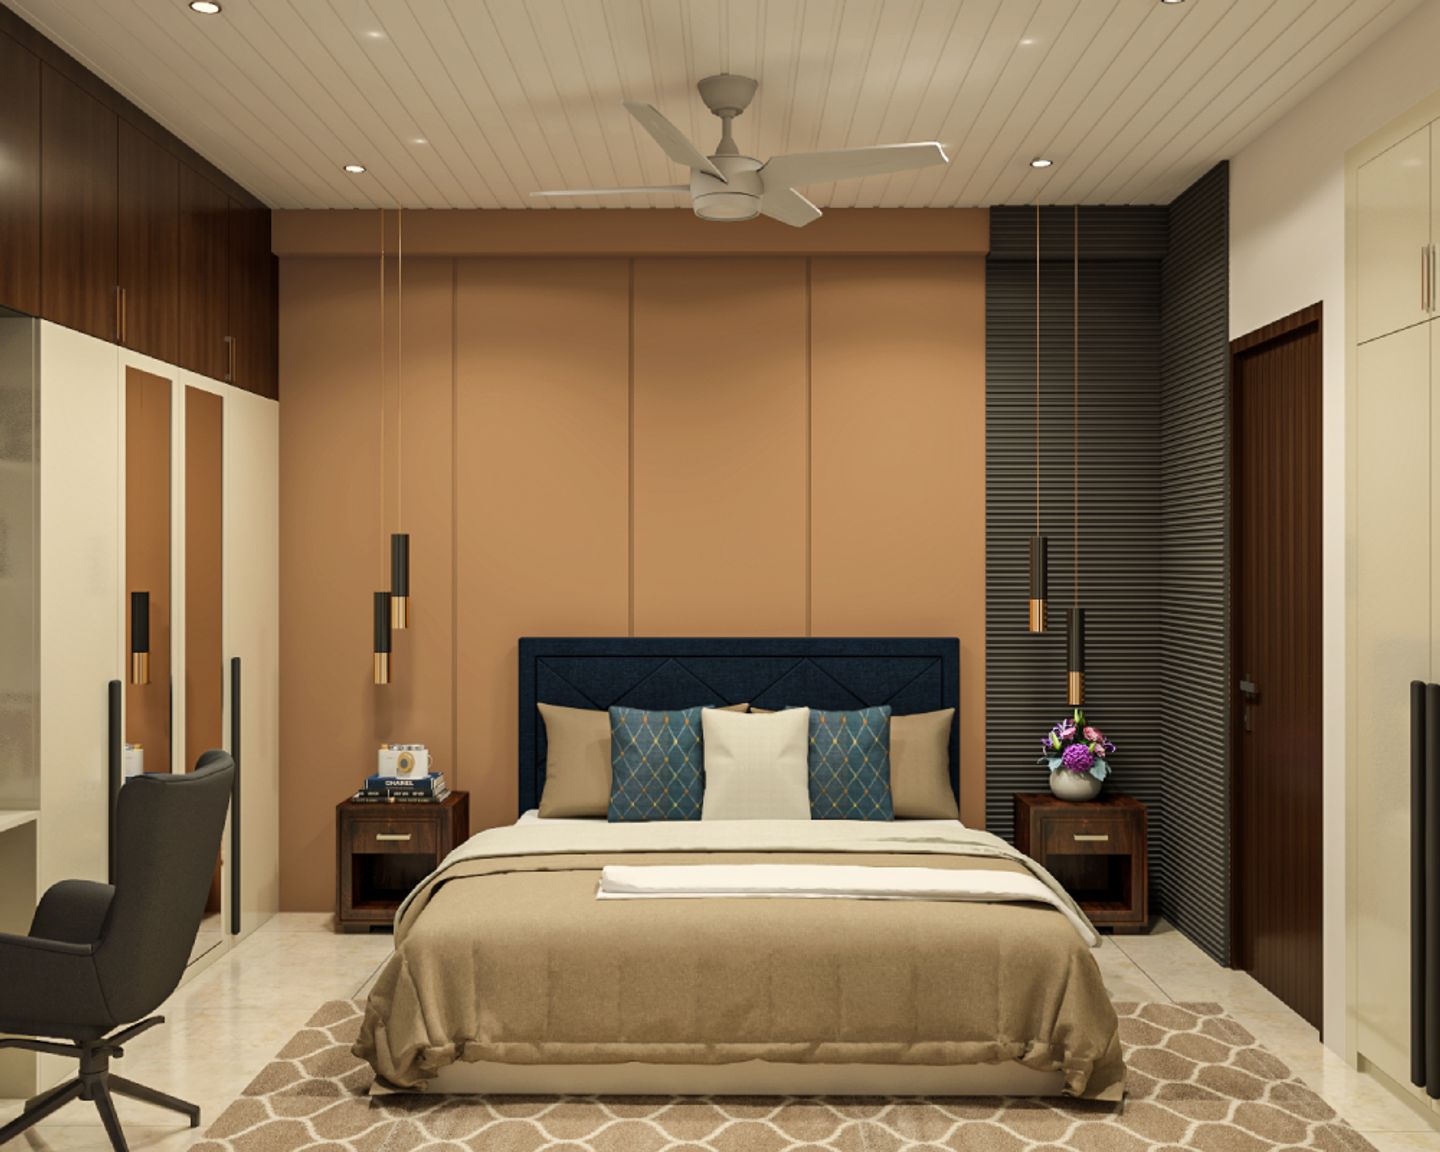 Bedroom Wall Design With Beige Panels - Livspace